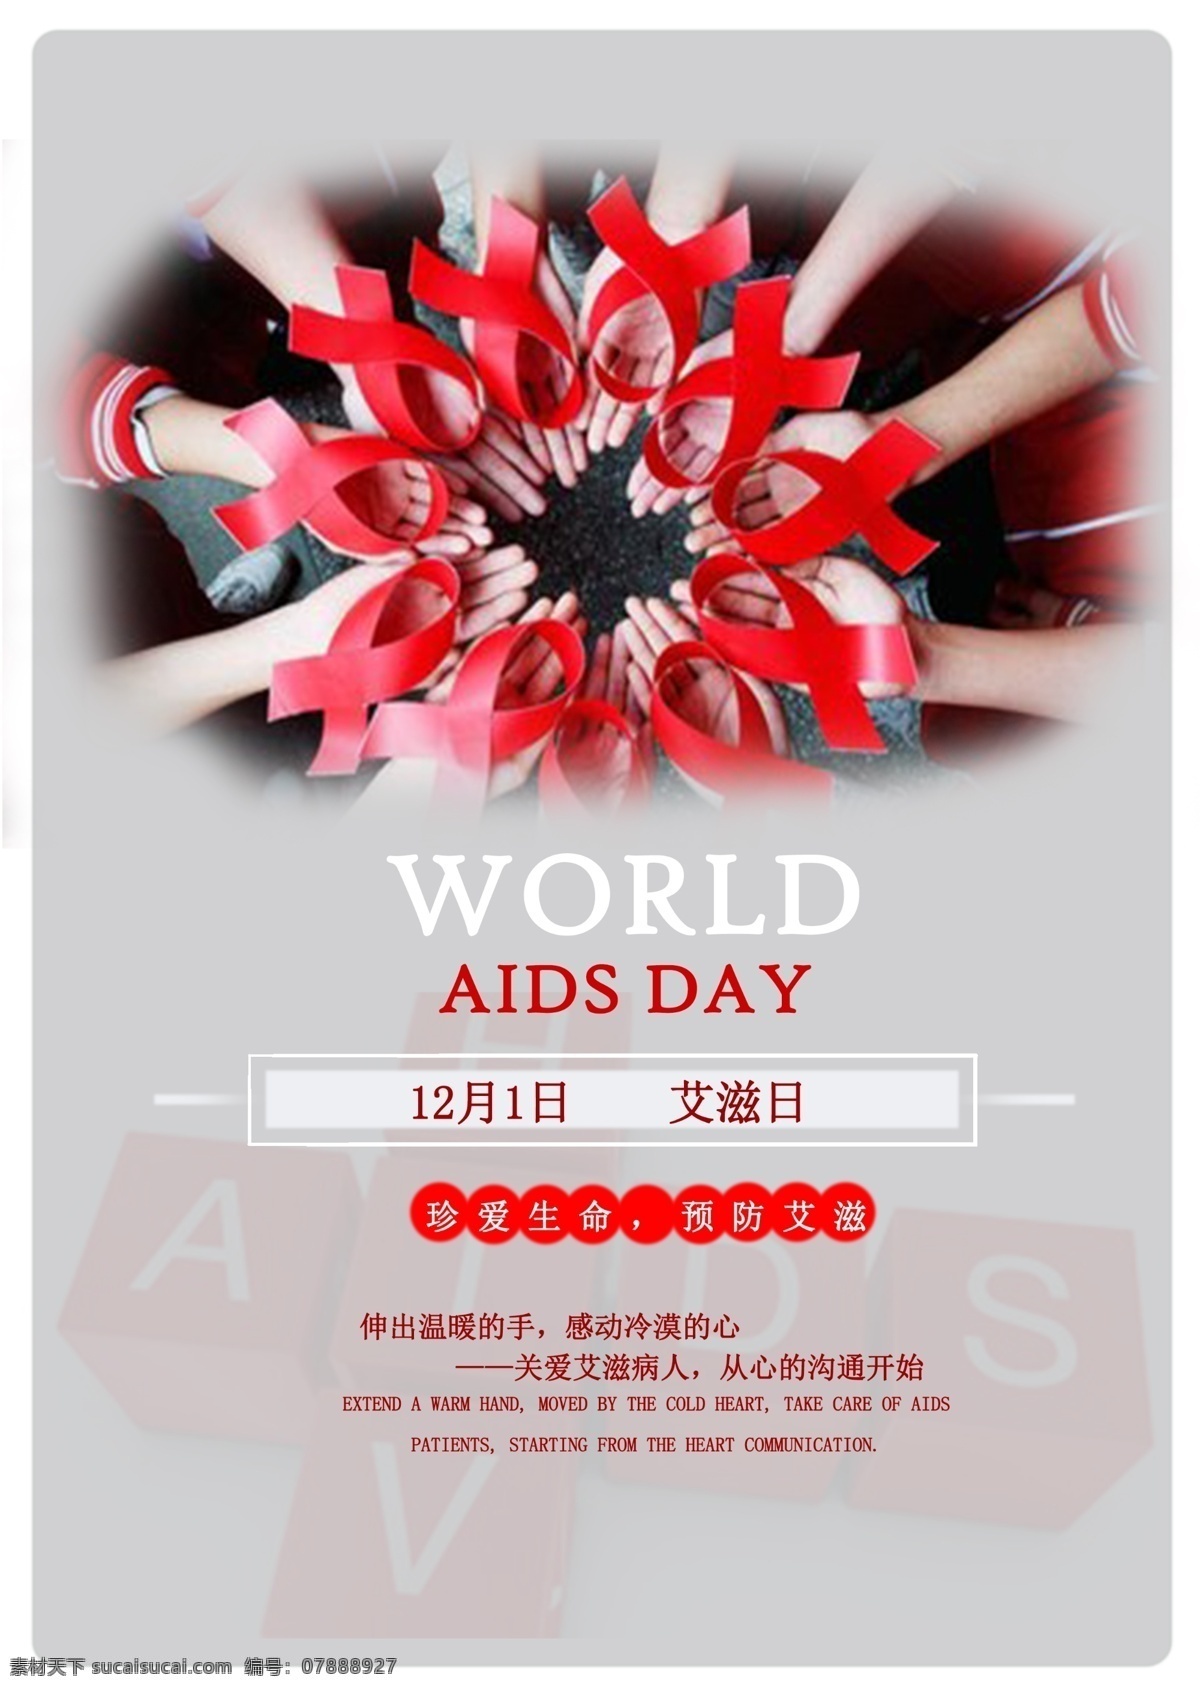 月 日 艾滋 宣传 节日 元素 图 预防 world aids day 公众 号 发布